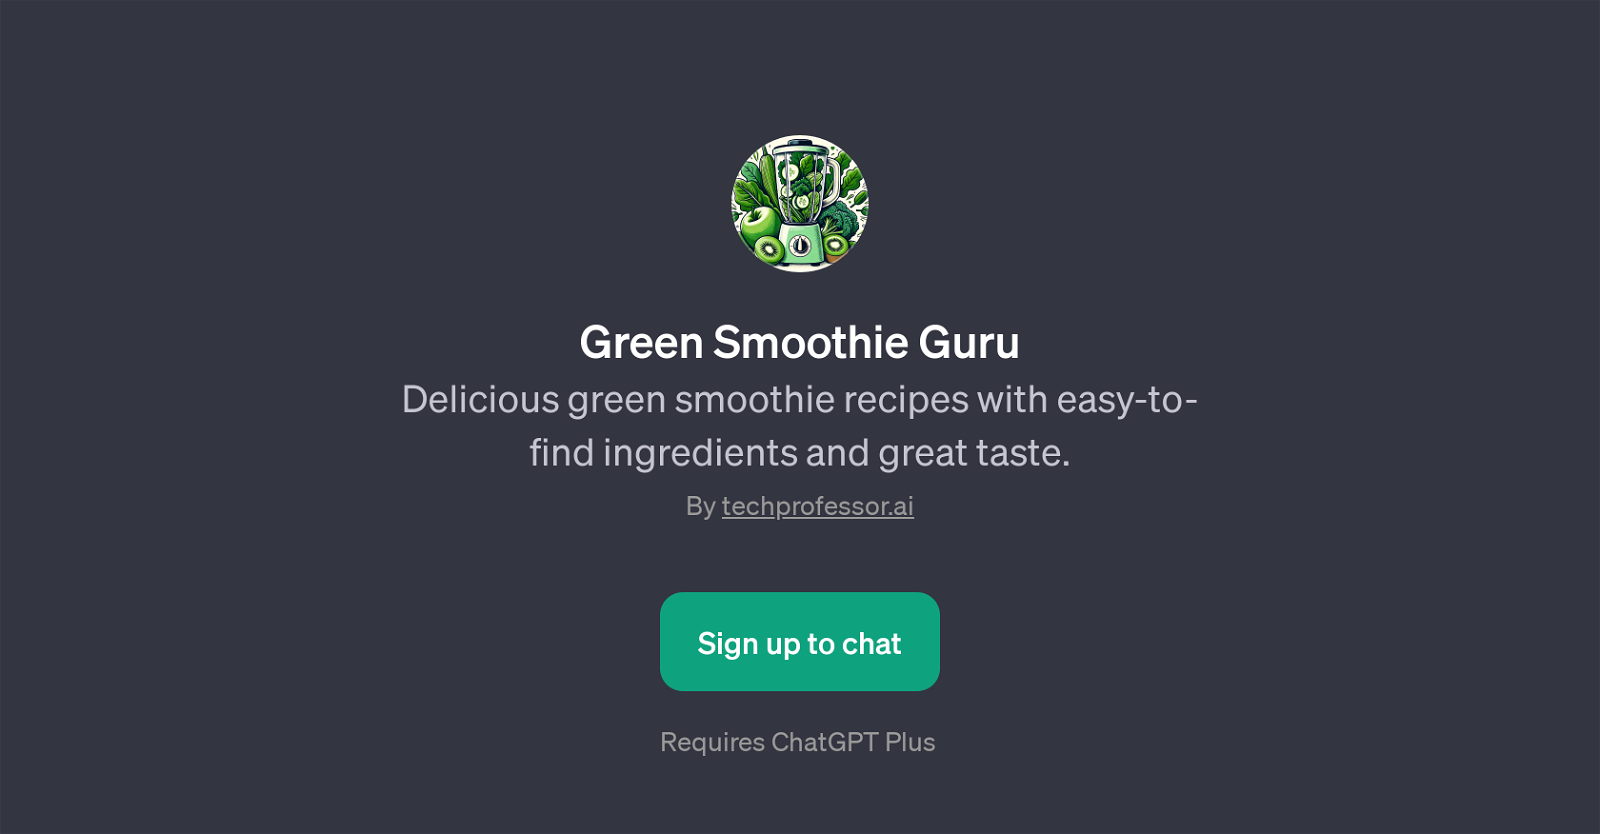 Green Smoothie Guru website